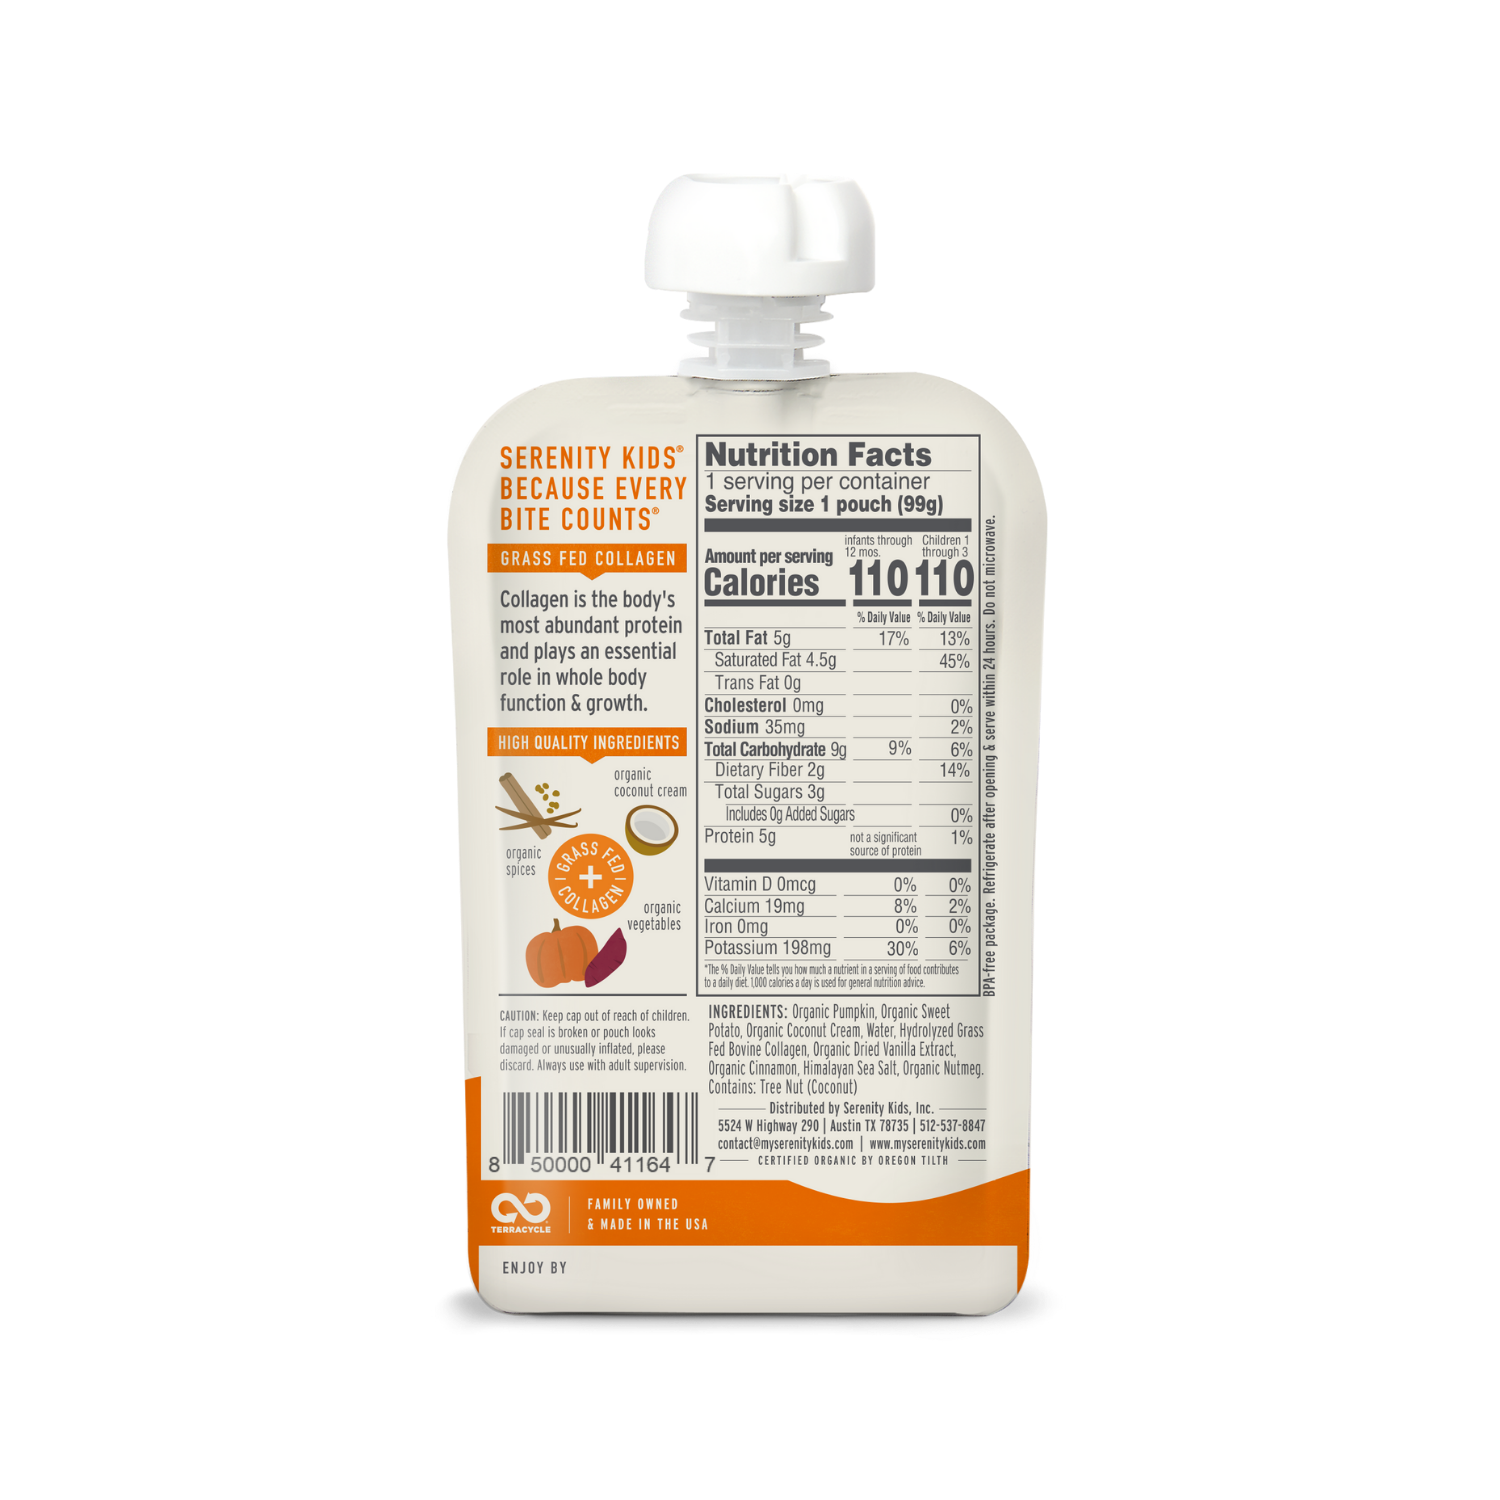 Pumpkin Spice Dairy-Free Smoothie + Protein